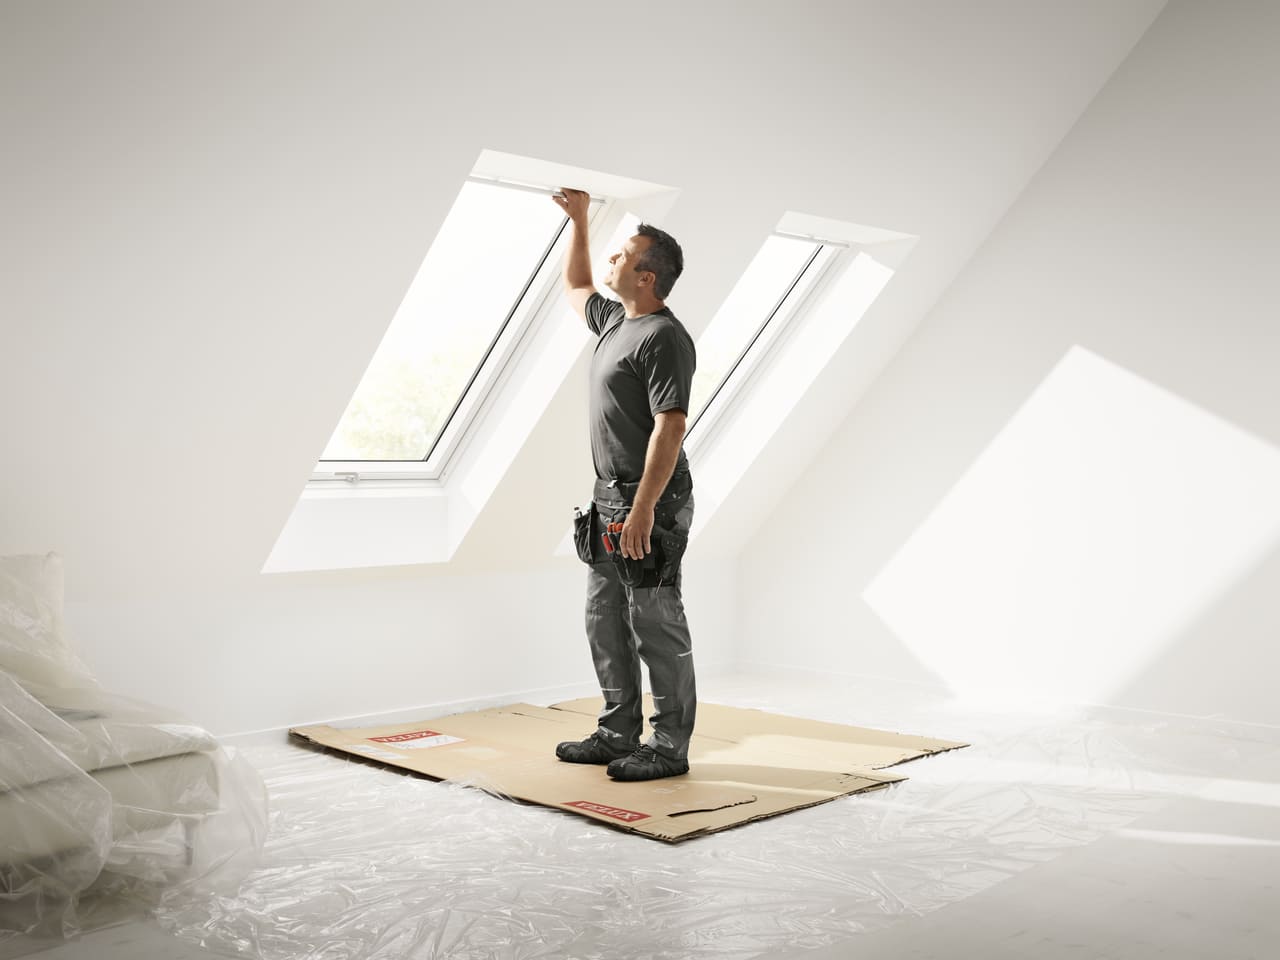 Einbauer montiert ein VELUX Dachflächenfenster in einem hellen Dachbodenraum.